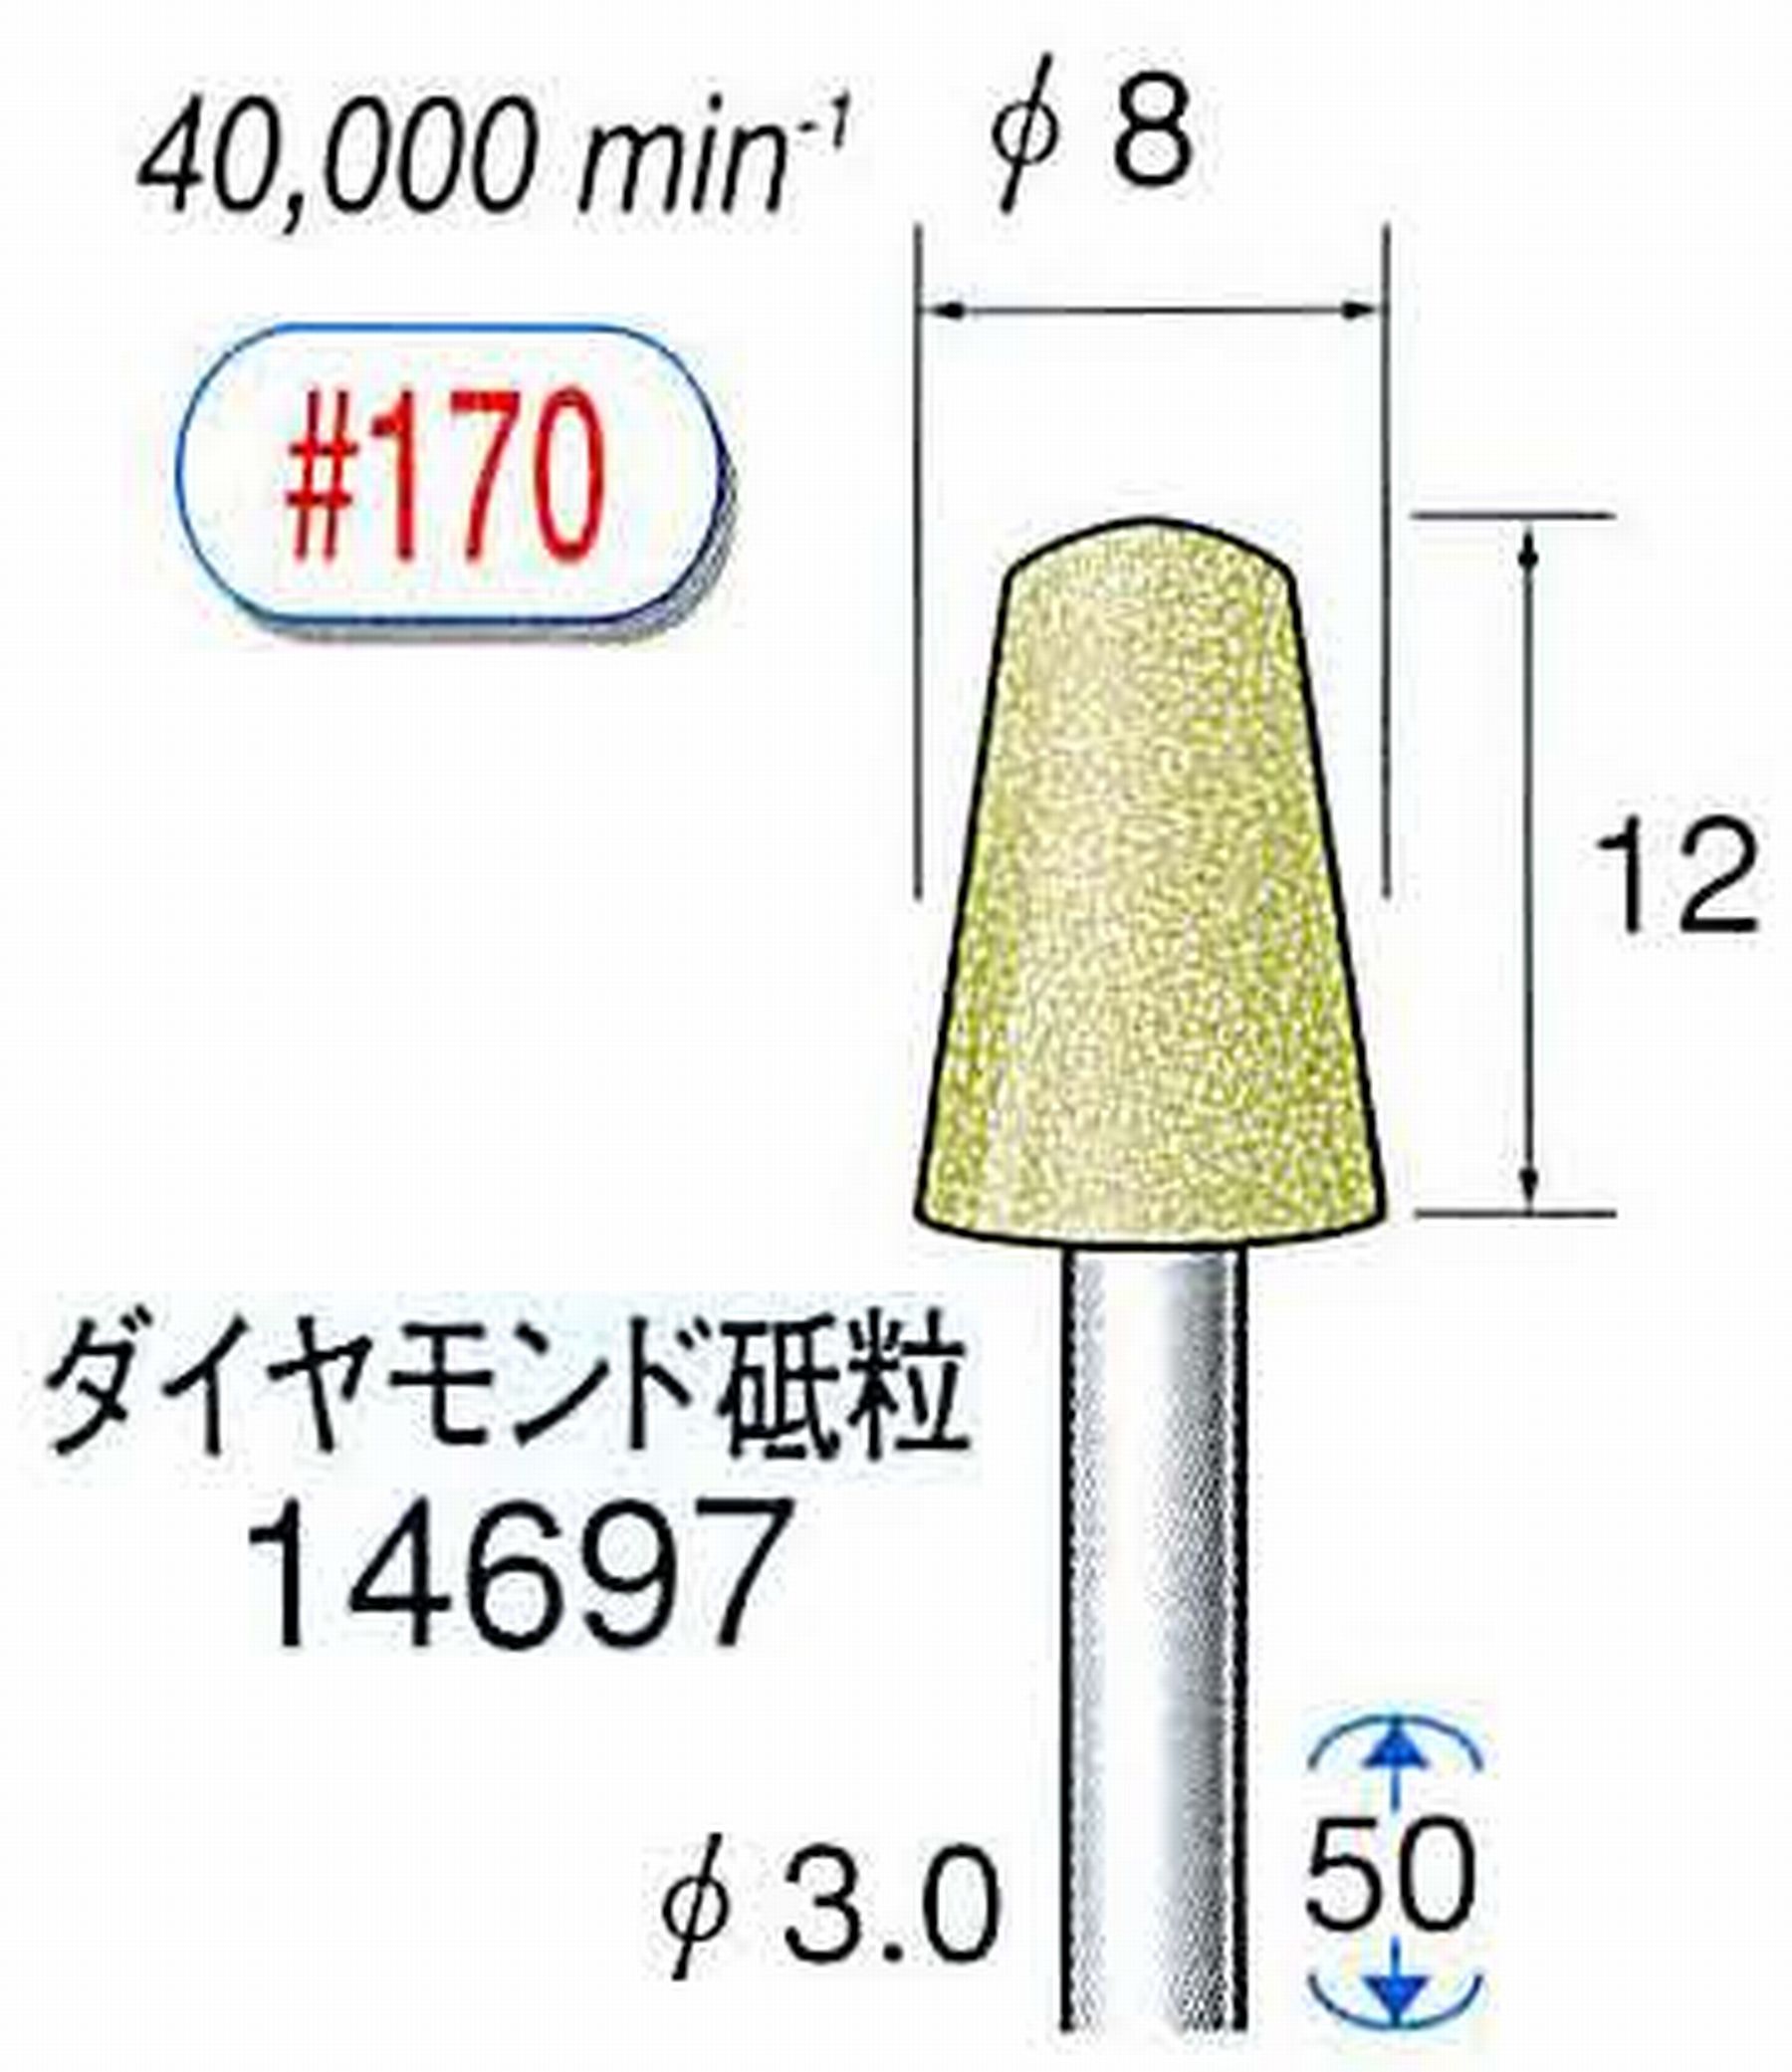 ナカニシ/NAKANISHI セラミックダイヤモンド砥石 ダイヤモンド砥粒 軸径(シャンク)φ3.0mm 14697